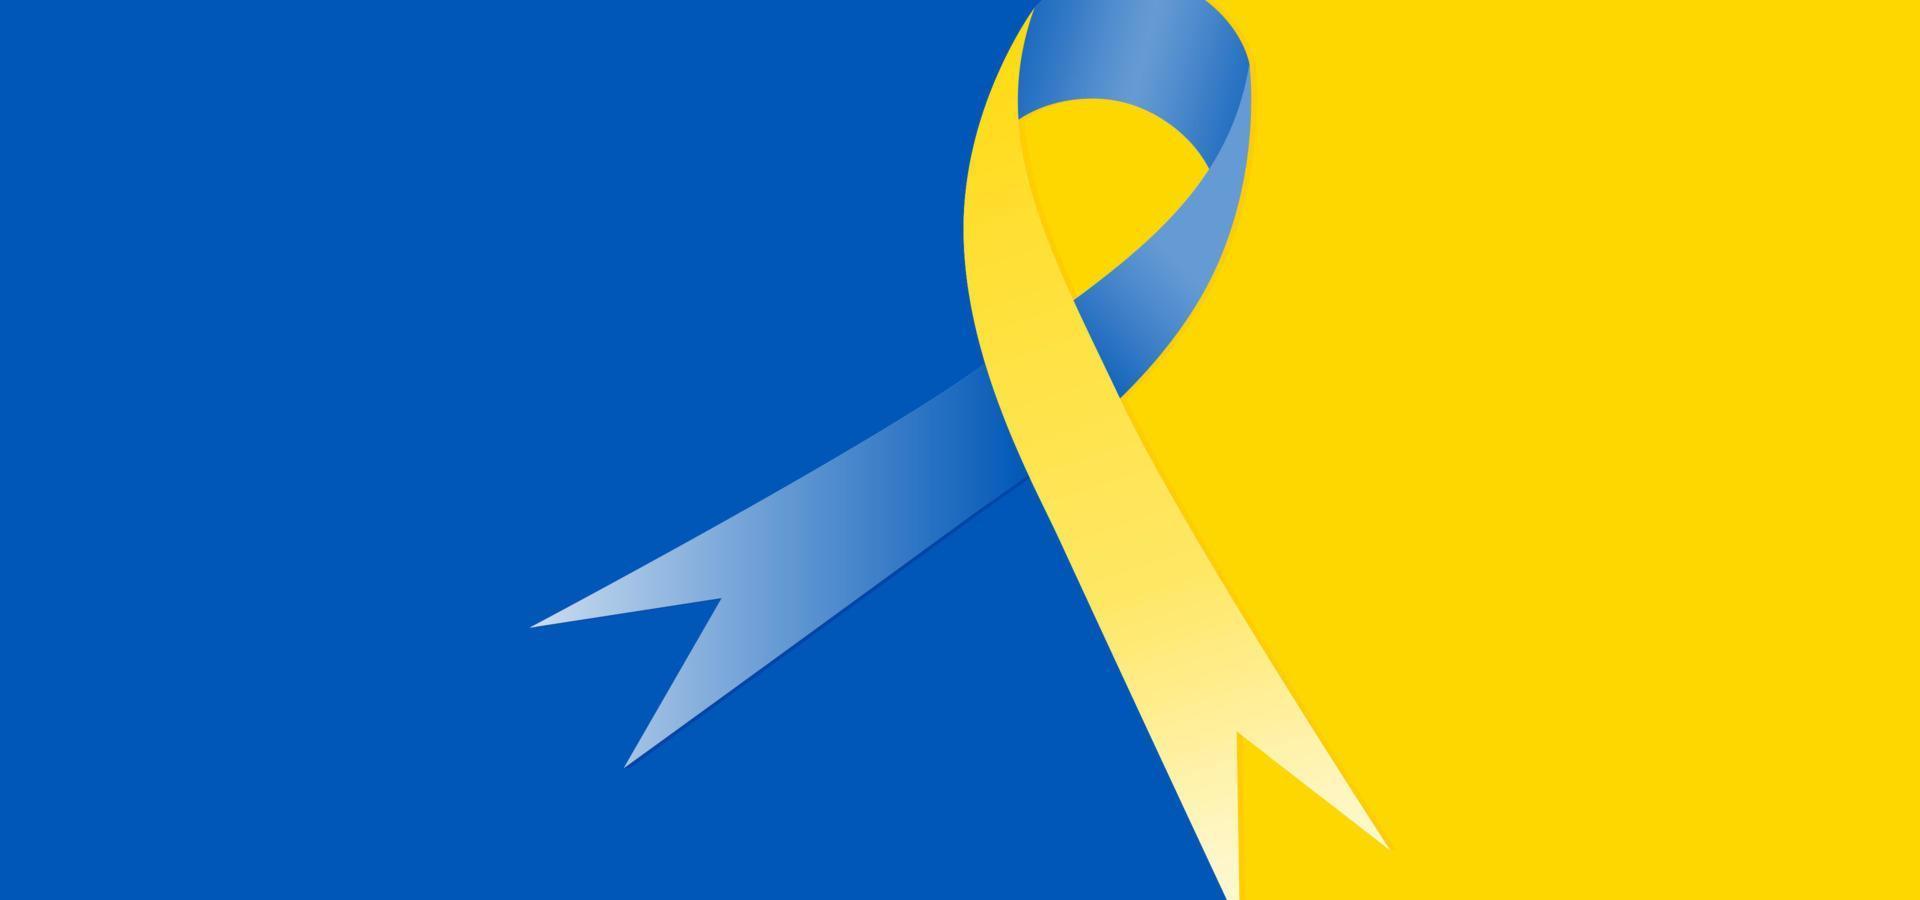 blauwe en gele achtergrond met het symbool van het vredeslint voor oekraïne. vector illustratie